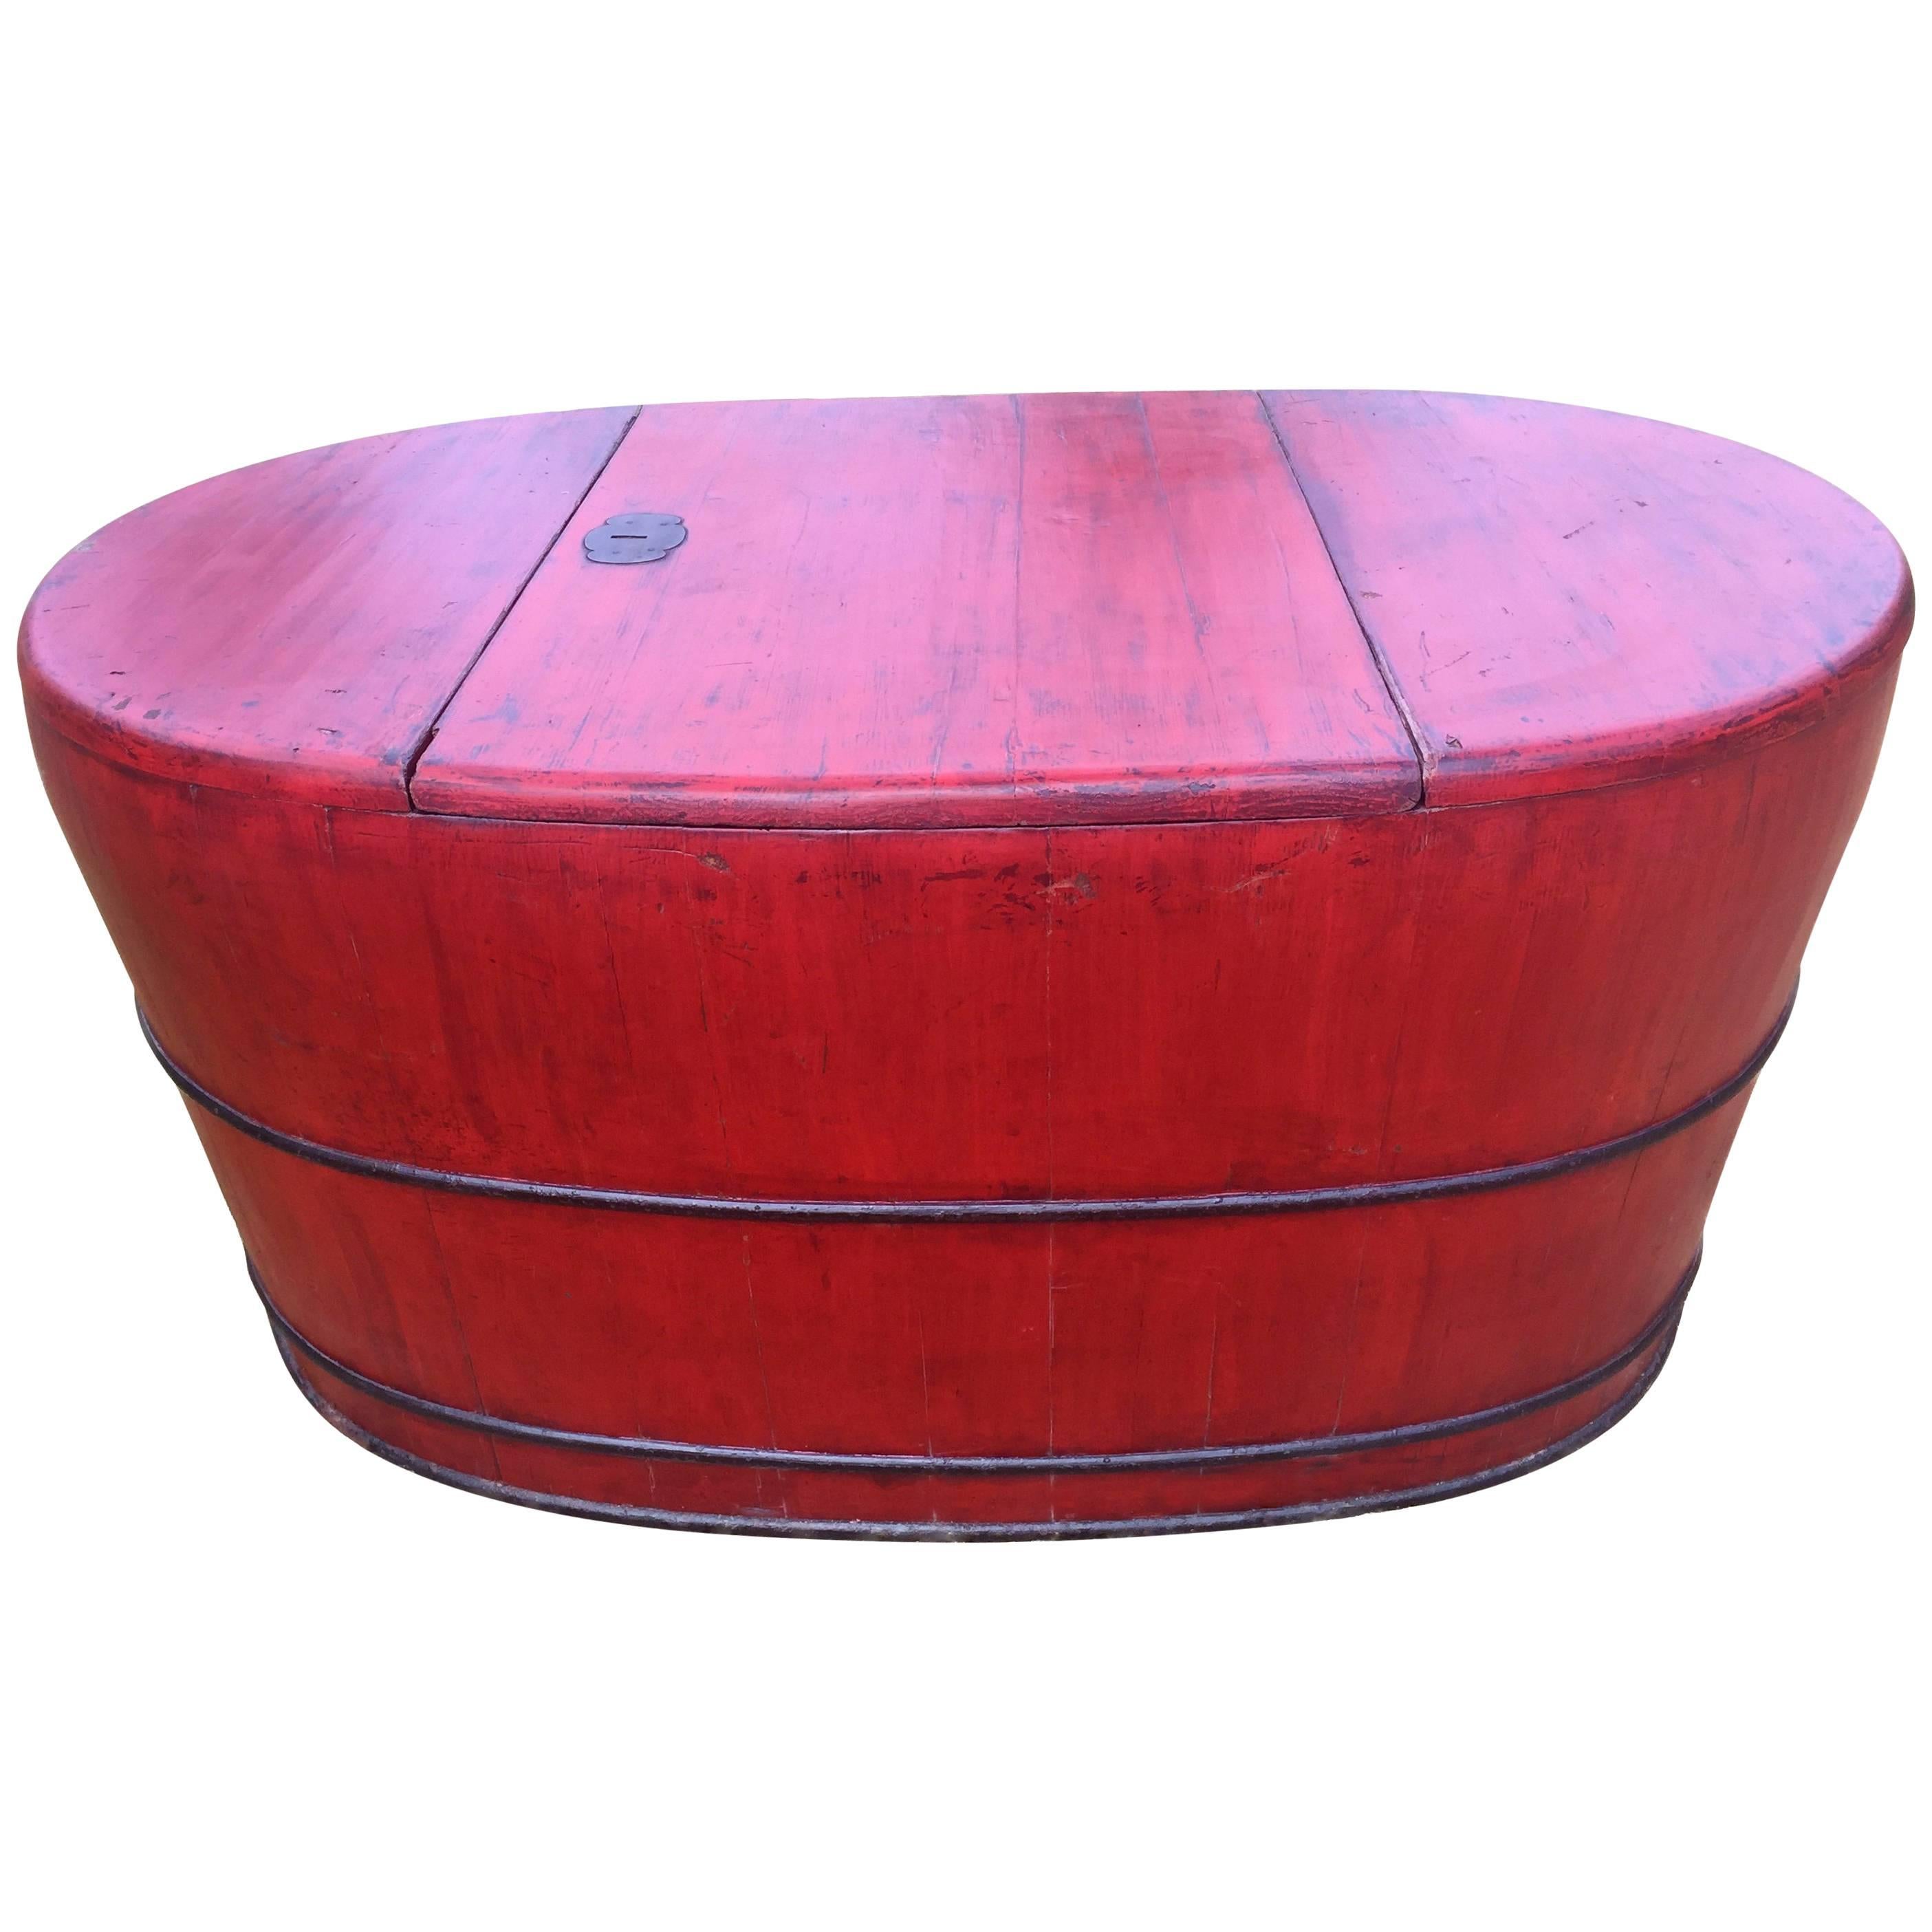 Vasca da bagno in legno laccato rosso